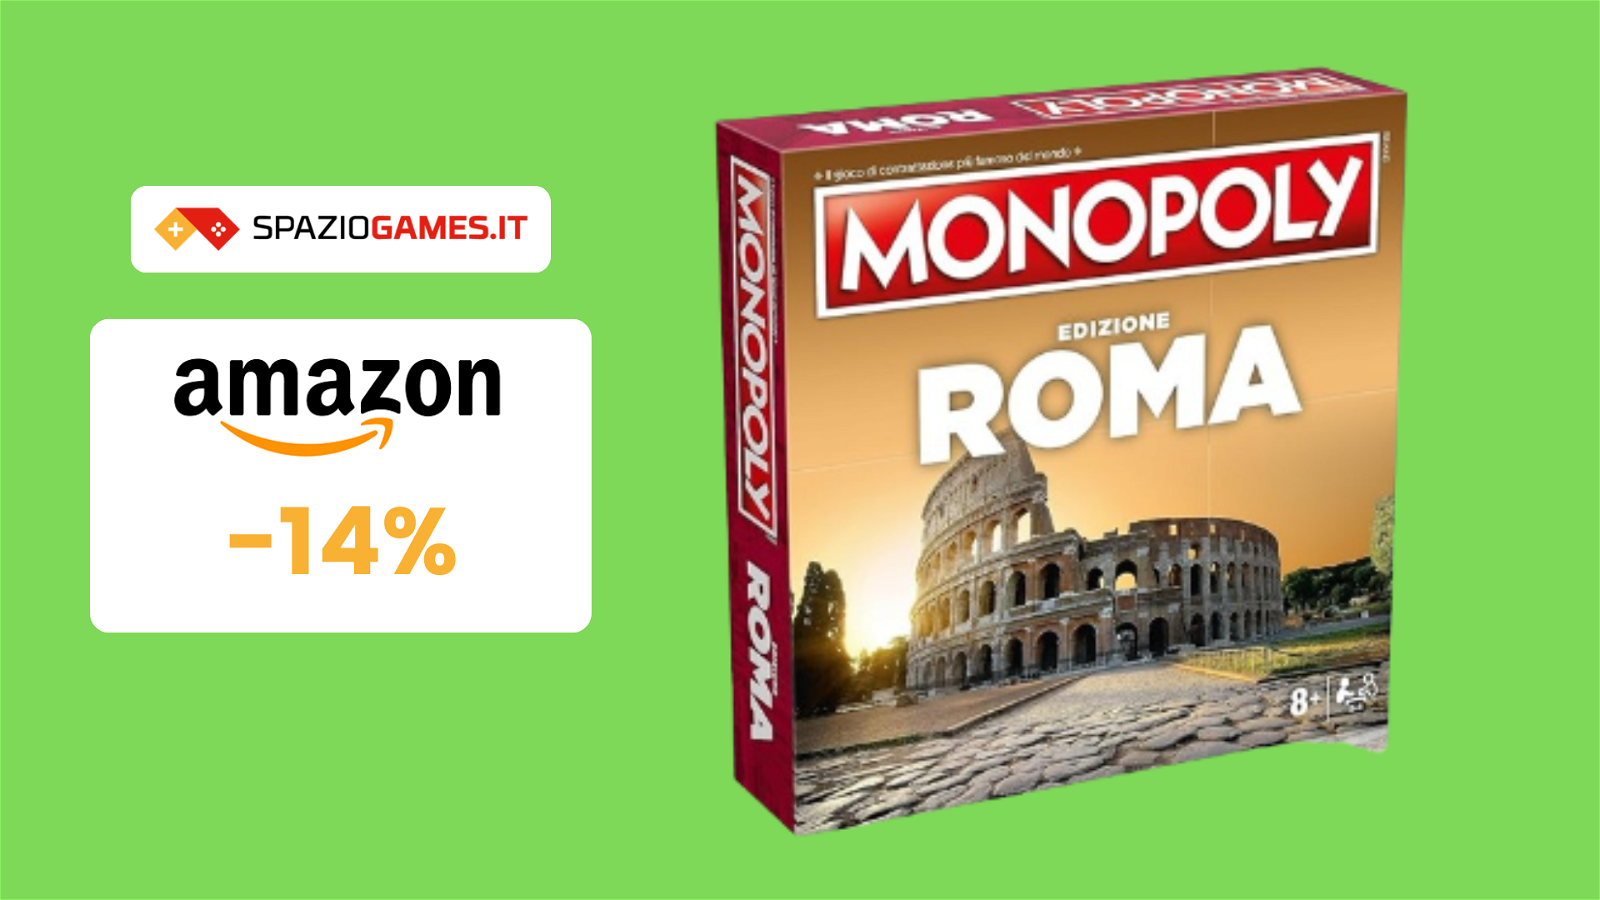 Monopoly Roma oggi a 30€: alla scoperta della capitale!